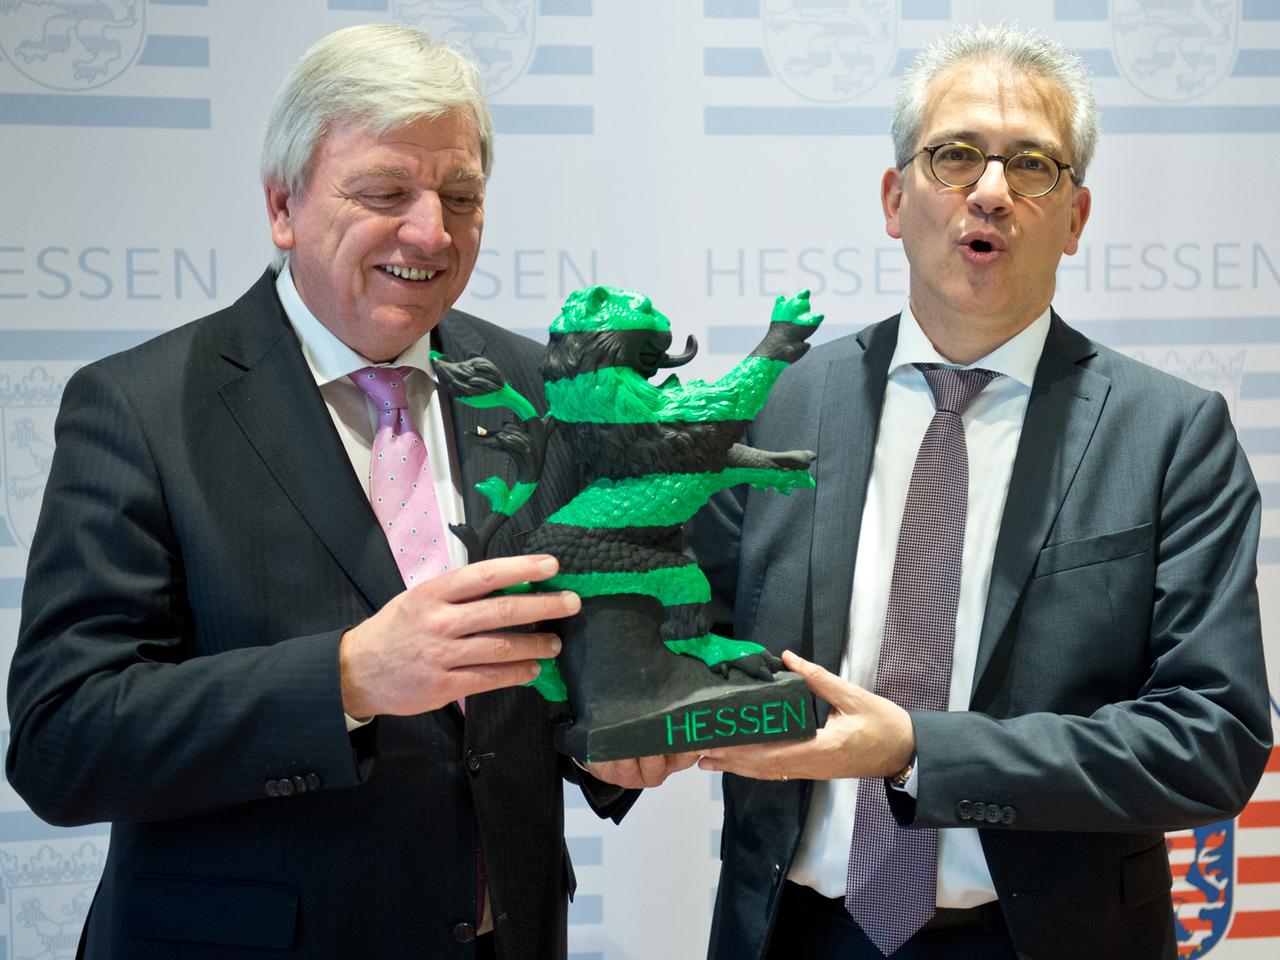 Der hessische Ministerpräsident Volker Bouffier (CDU) und sein Stellvertreter Tarek Al-Wazir (Die Grünen) hantieren mit einem schwarz-grünen "Hessenlöwen"